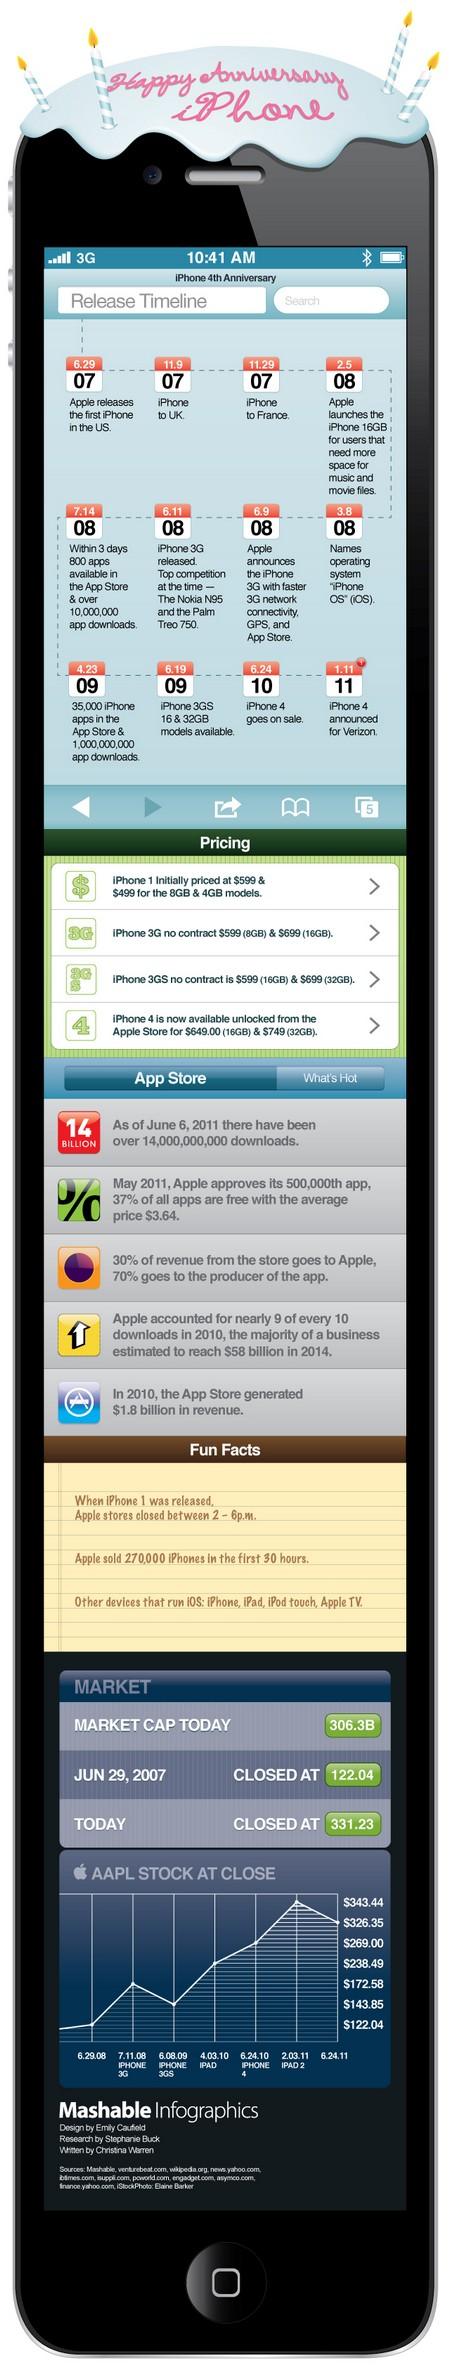 iPhone : 4ème anniversaire aujourd’hui